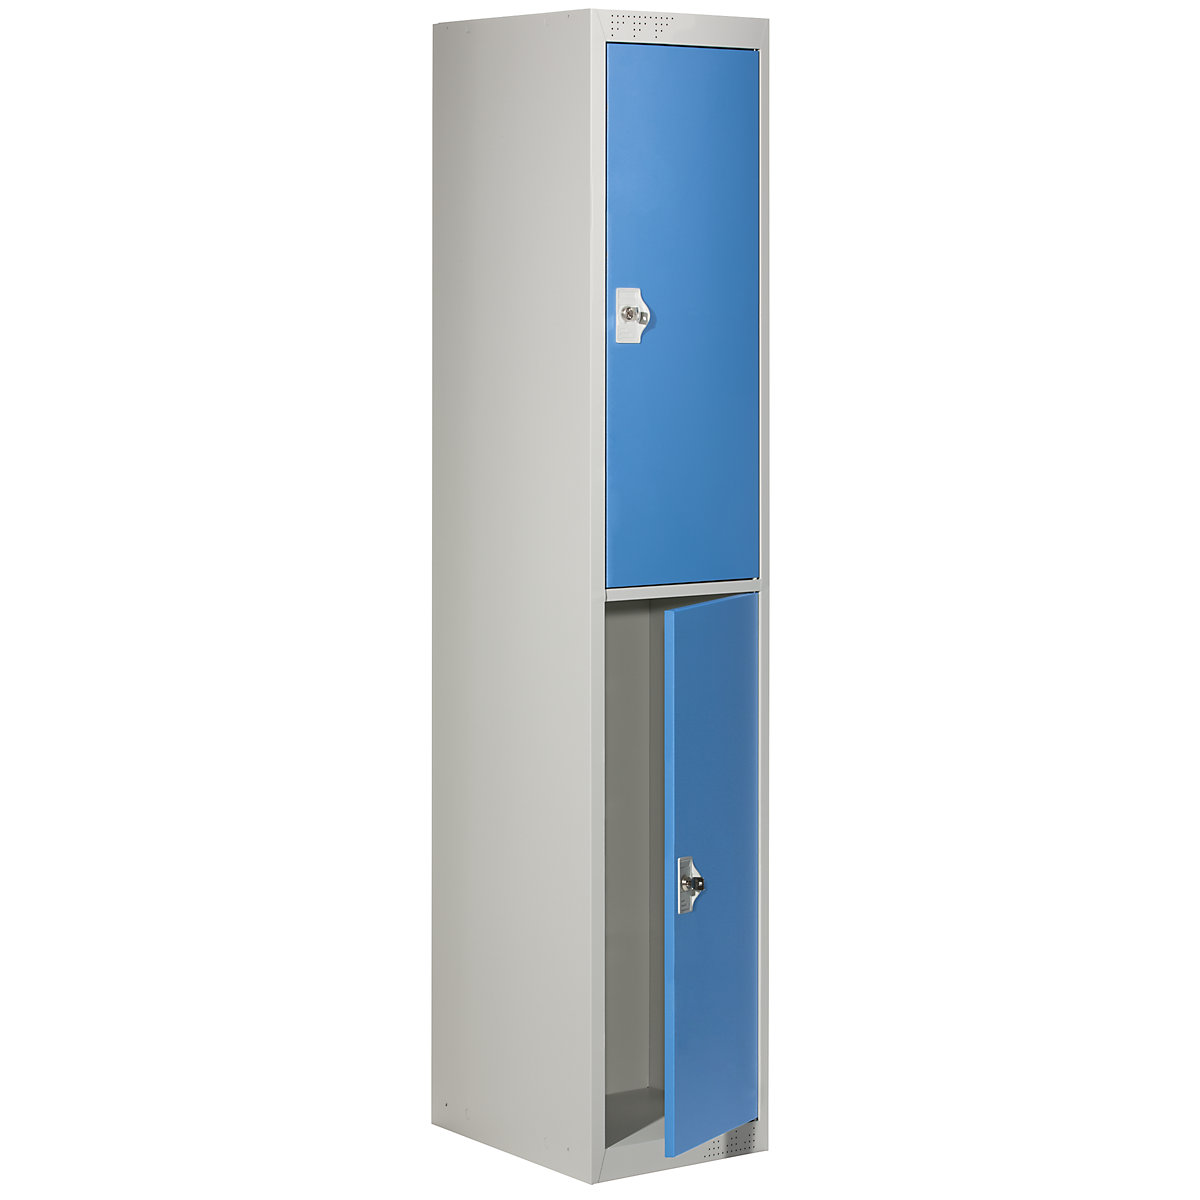 EUROKRAFTbasic Garderobenschrank-System mit Grund- und Anbauelementen, HxBxT 1800 x 300 x 500 mm, 1 Kleiderstange, lichtgrau / lichtblau, Grundelement